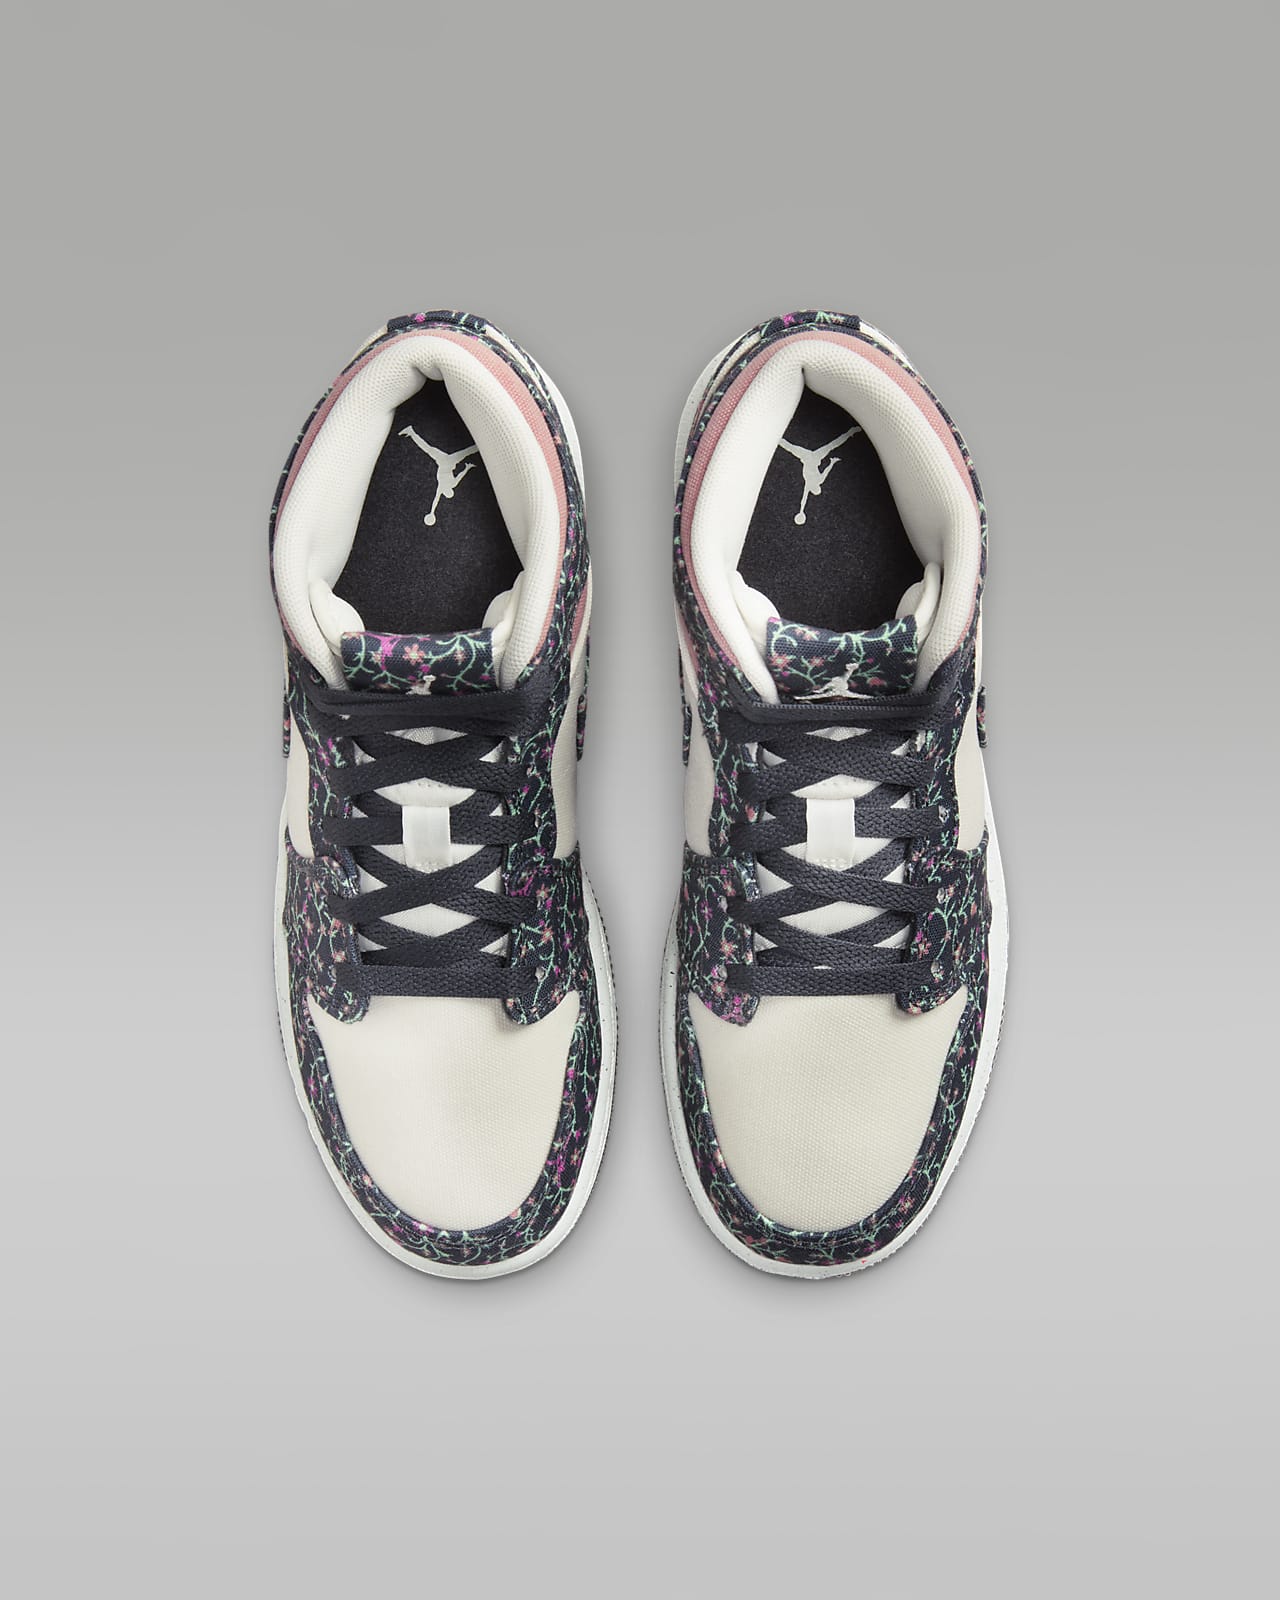  Nike Air Jordan 1 Mid Se para niños (Niños Grandes),  Vela/Naranja de seguridad/Azul psíquico : Ropa, Zapatos y Joyería